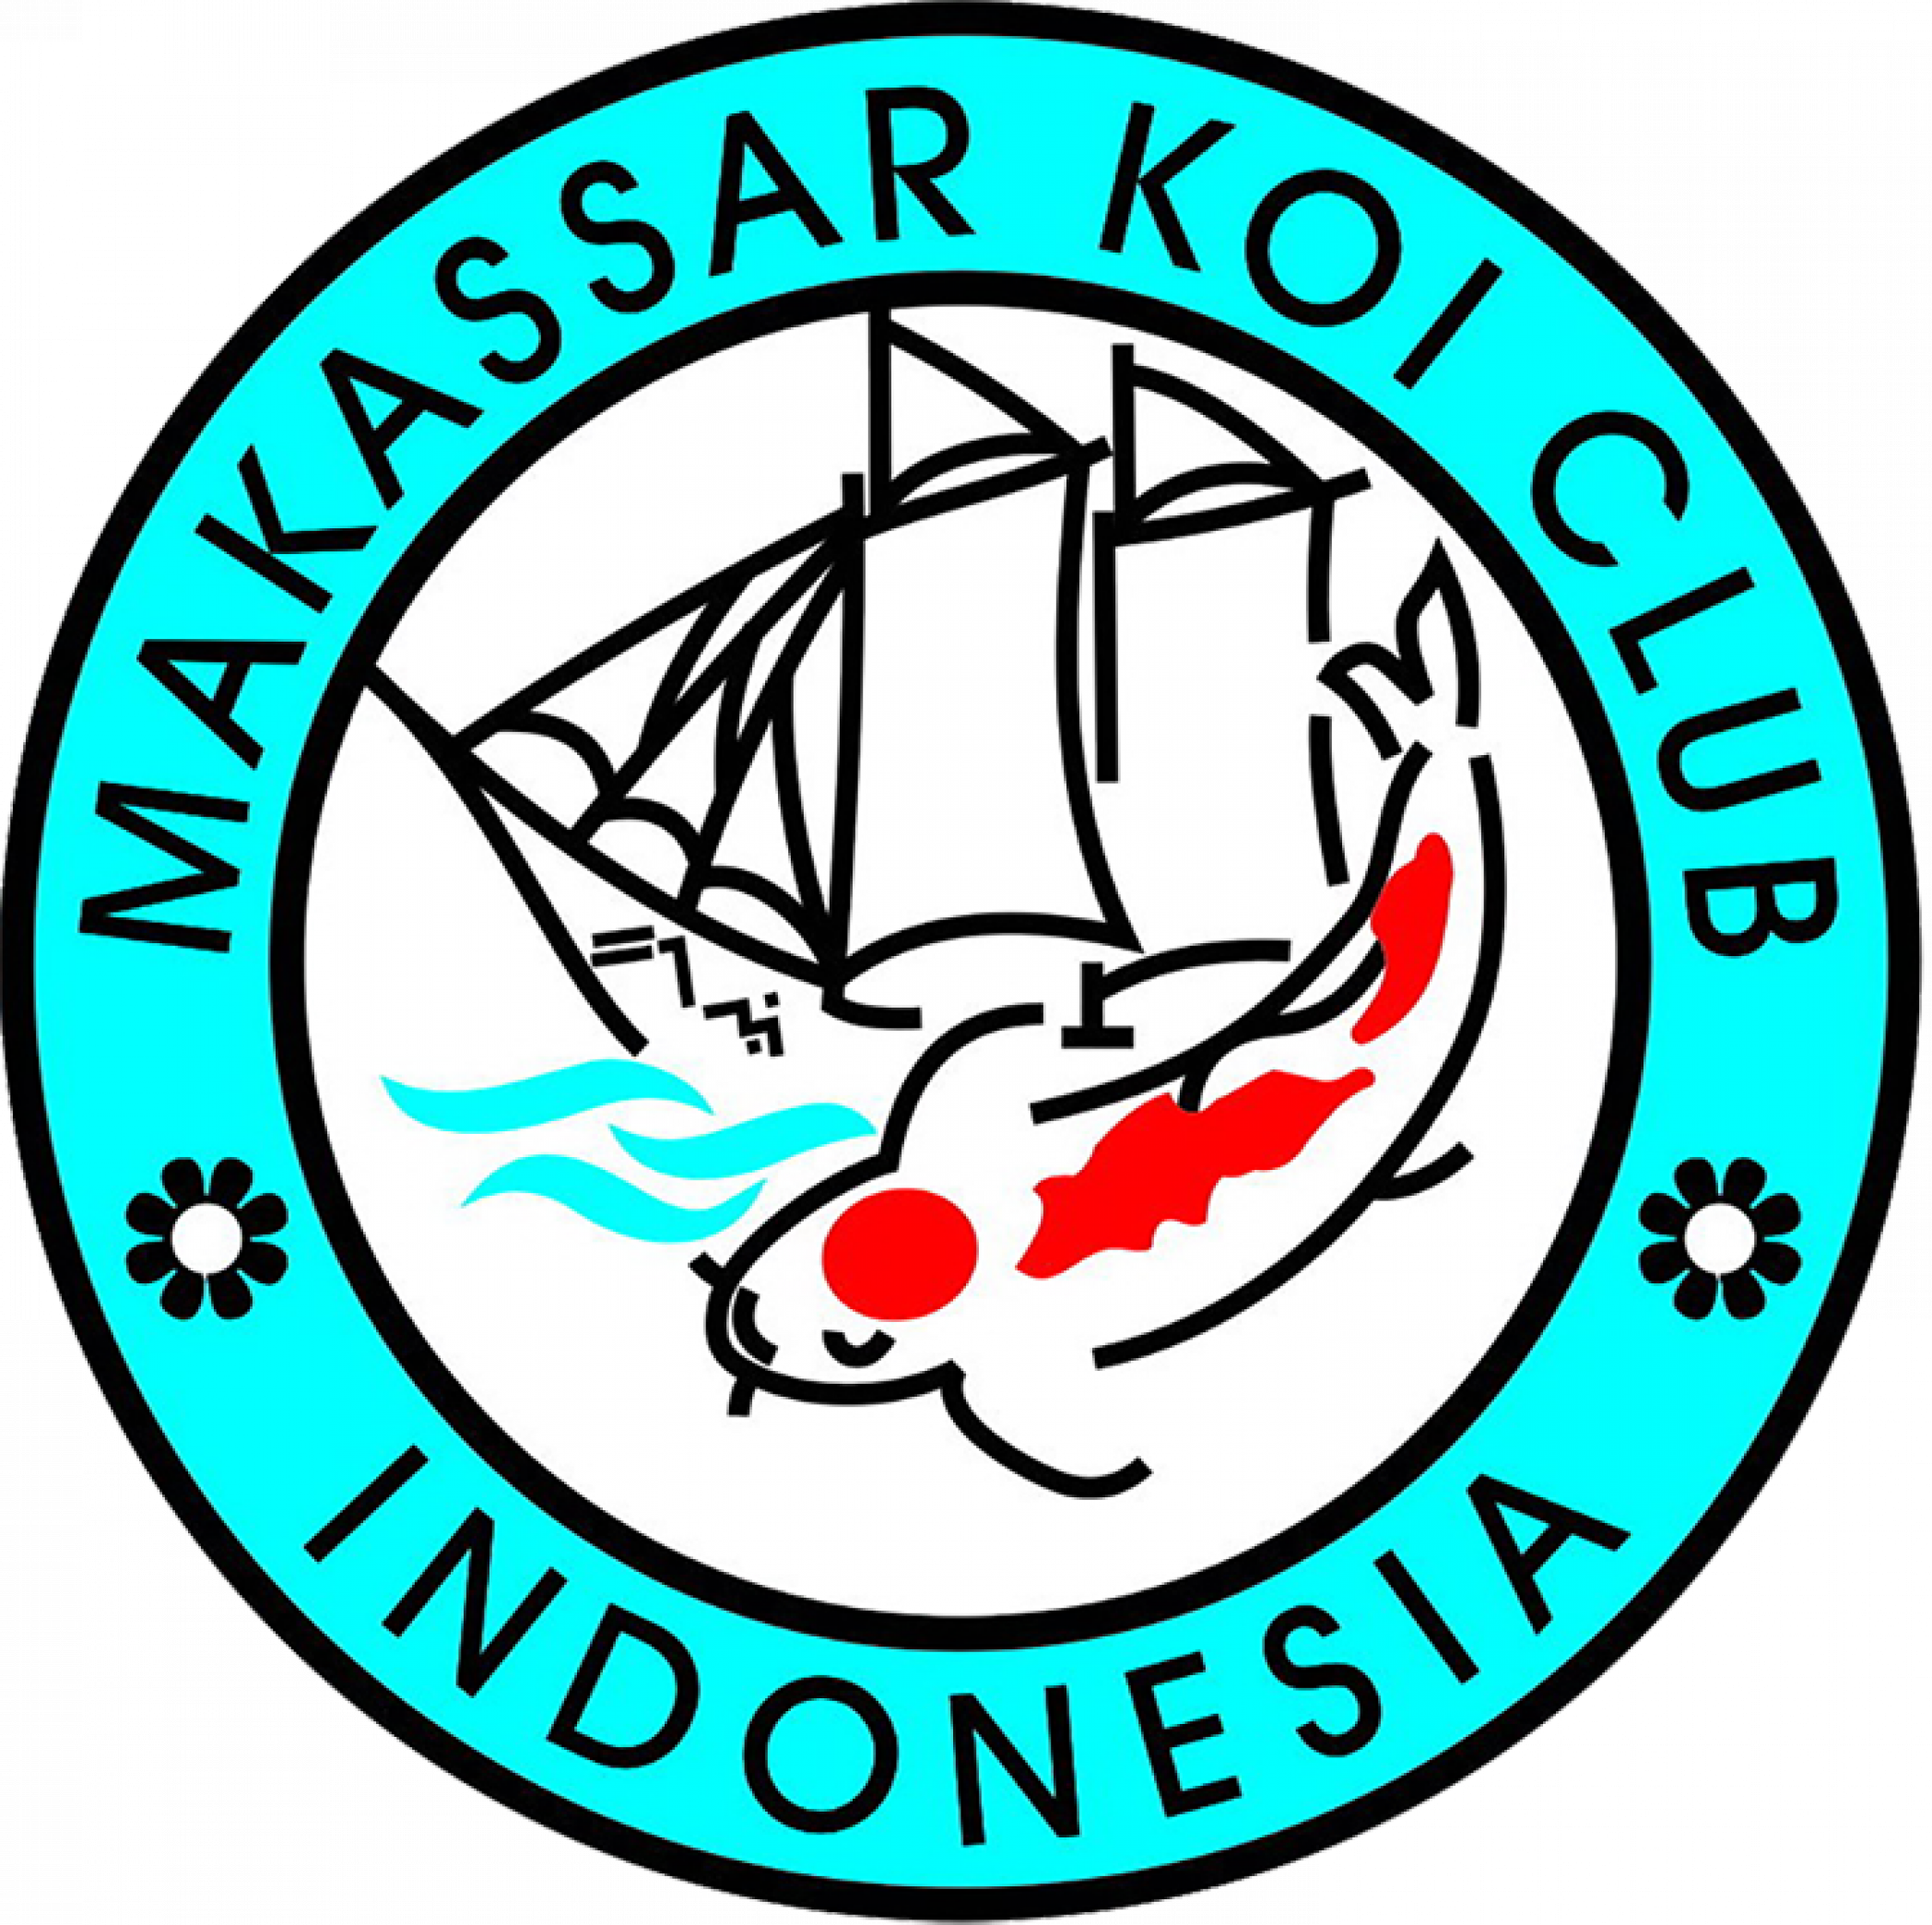 Makasar Koi Club